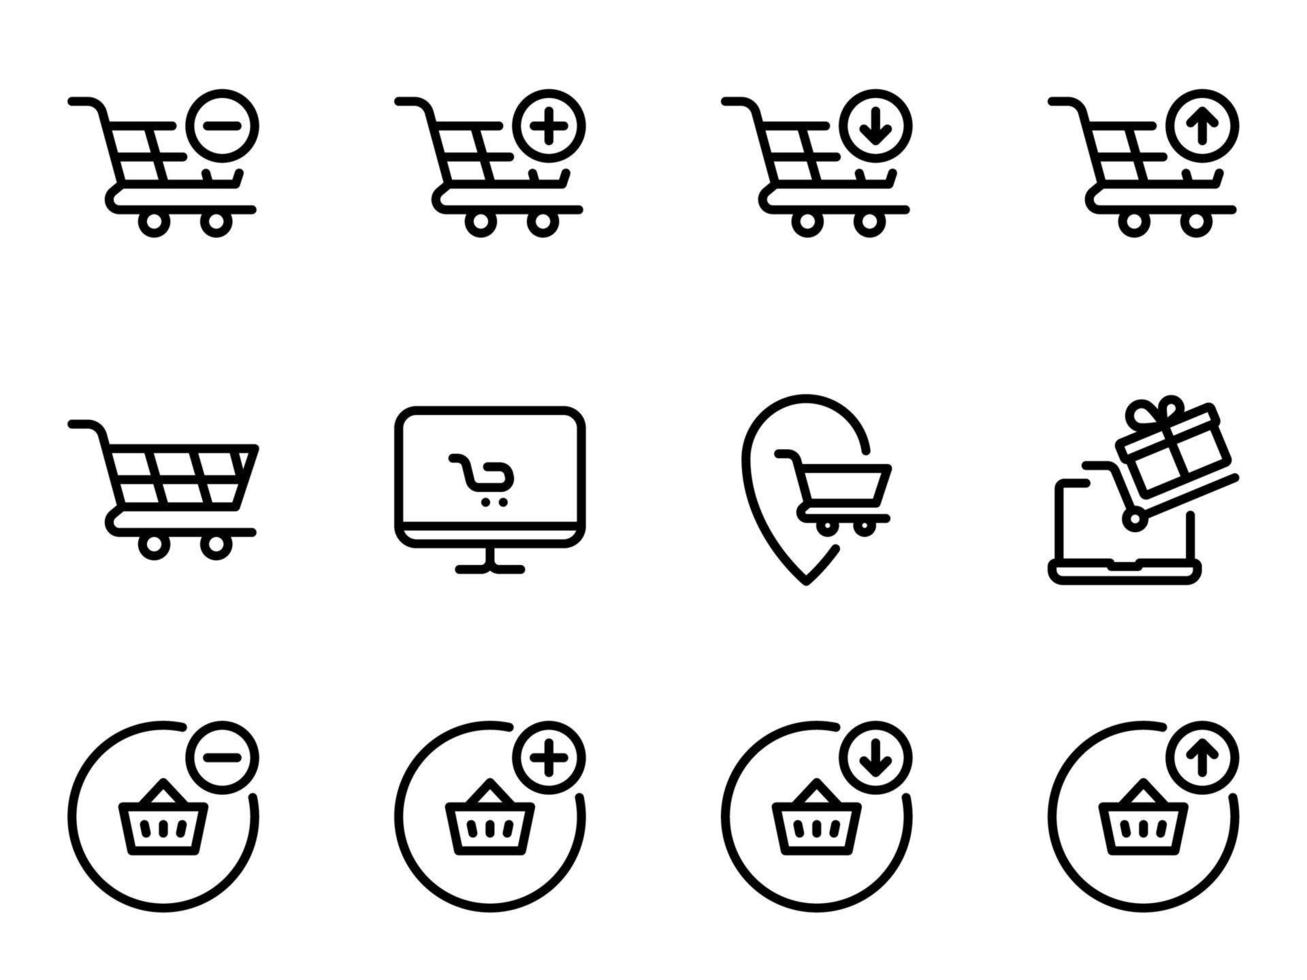 conjunto de ícones do vetor preto, isolados contra um fundo branco. ilustração plana em um tema de compras